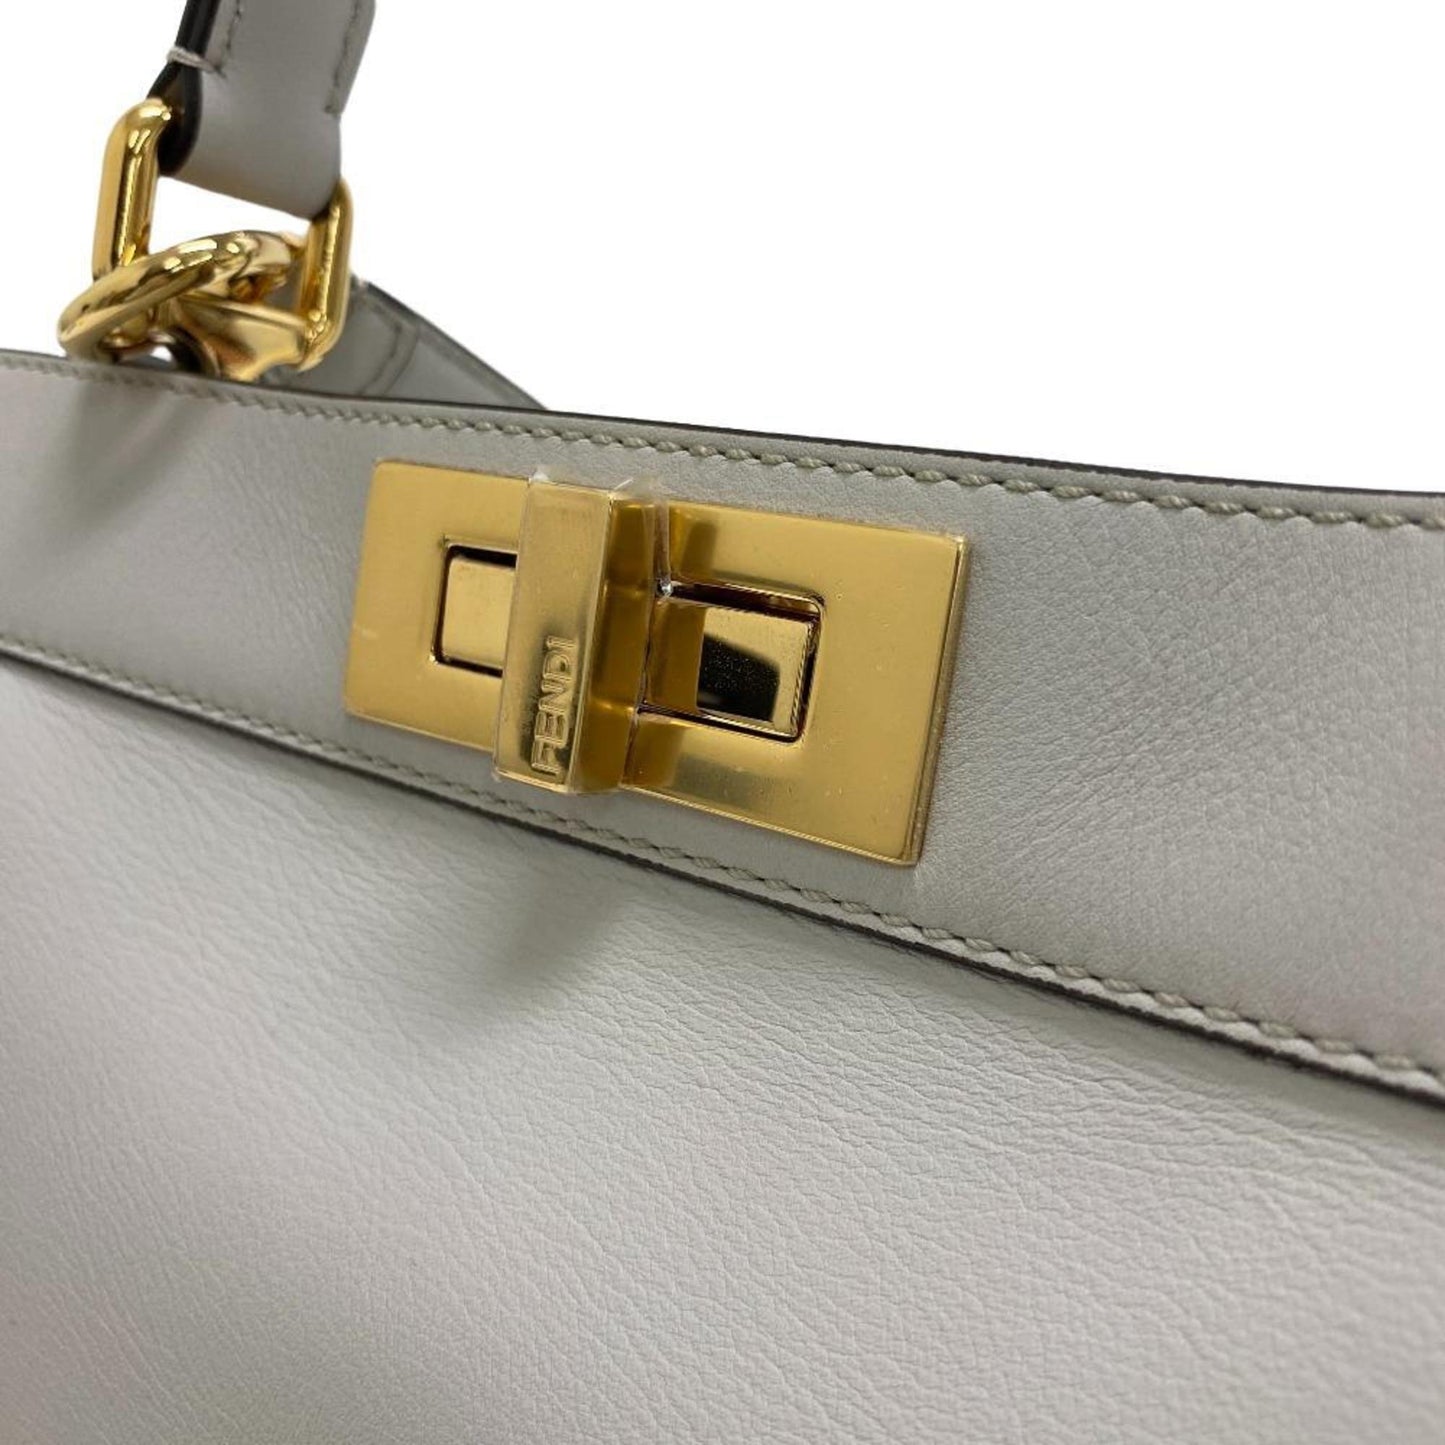 Fendi Women's Elegant Leather Handbag with Shoulder Strap by Famous Designer in Grey